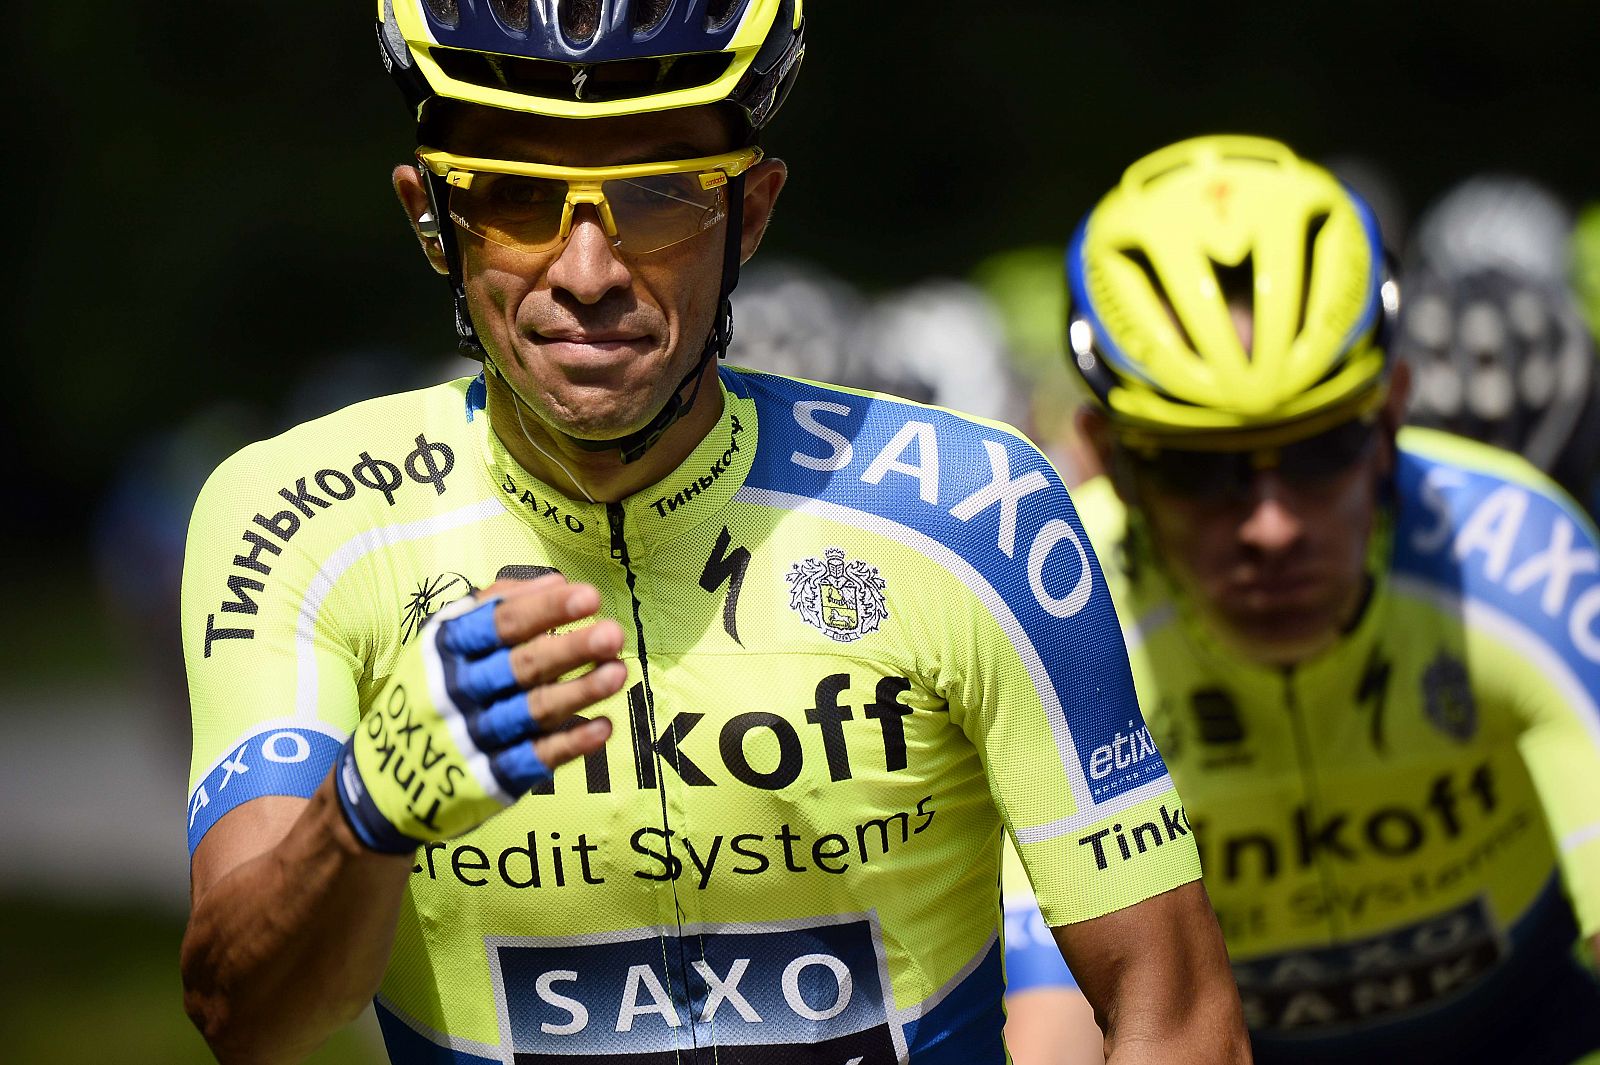 Imagen de Alberto Contador durante el pasado Tour de Francia 2014.